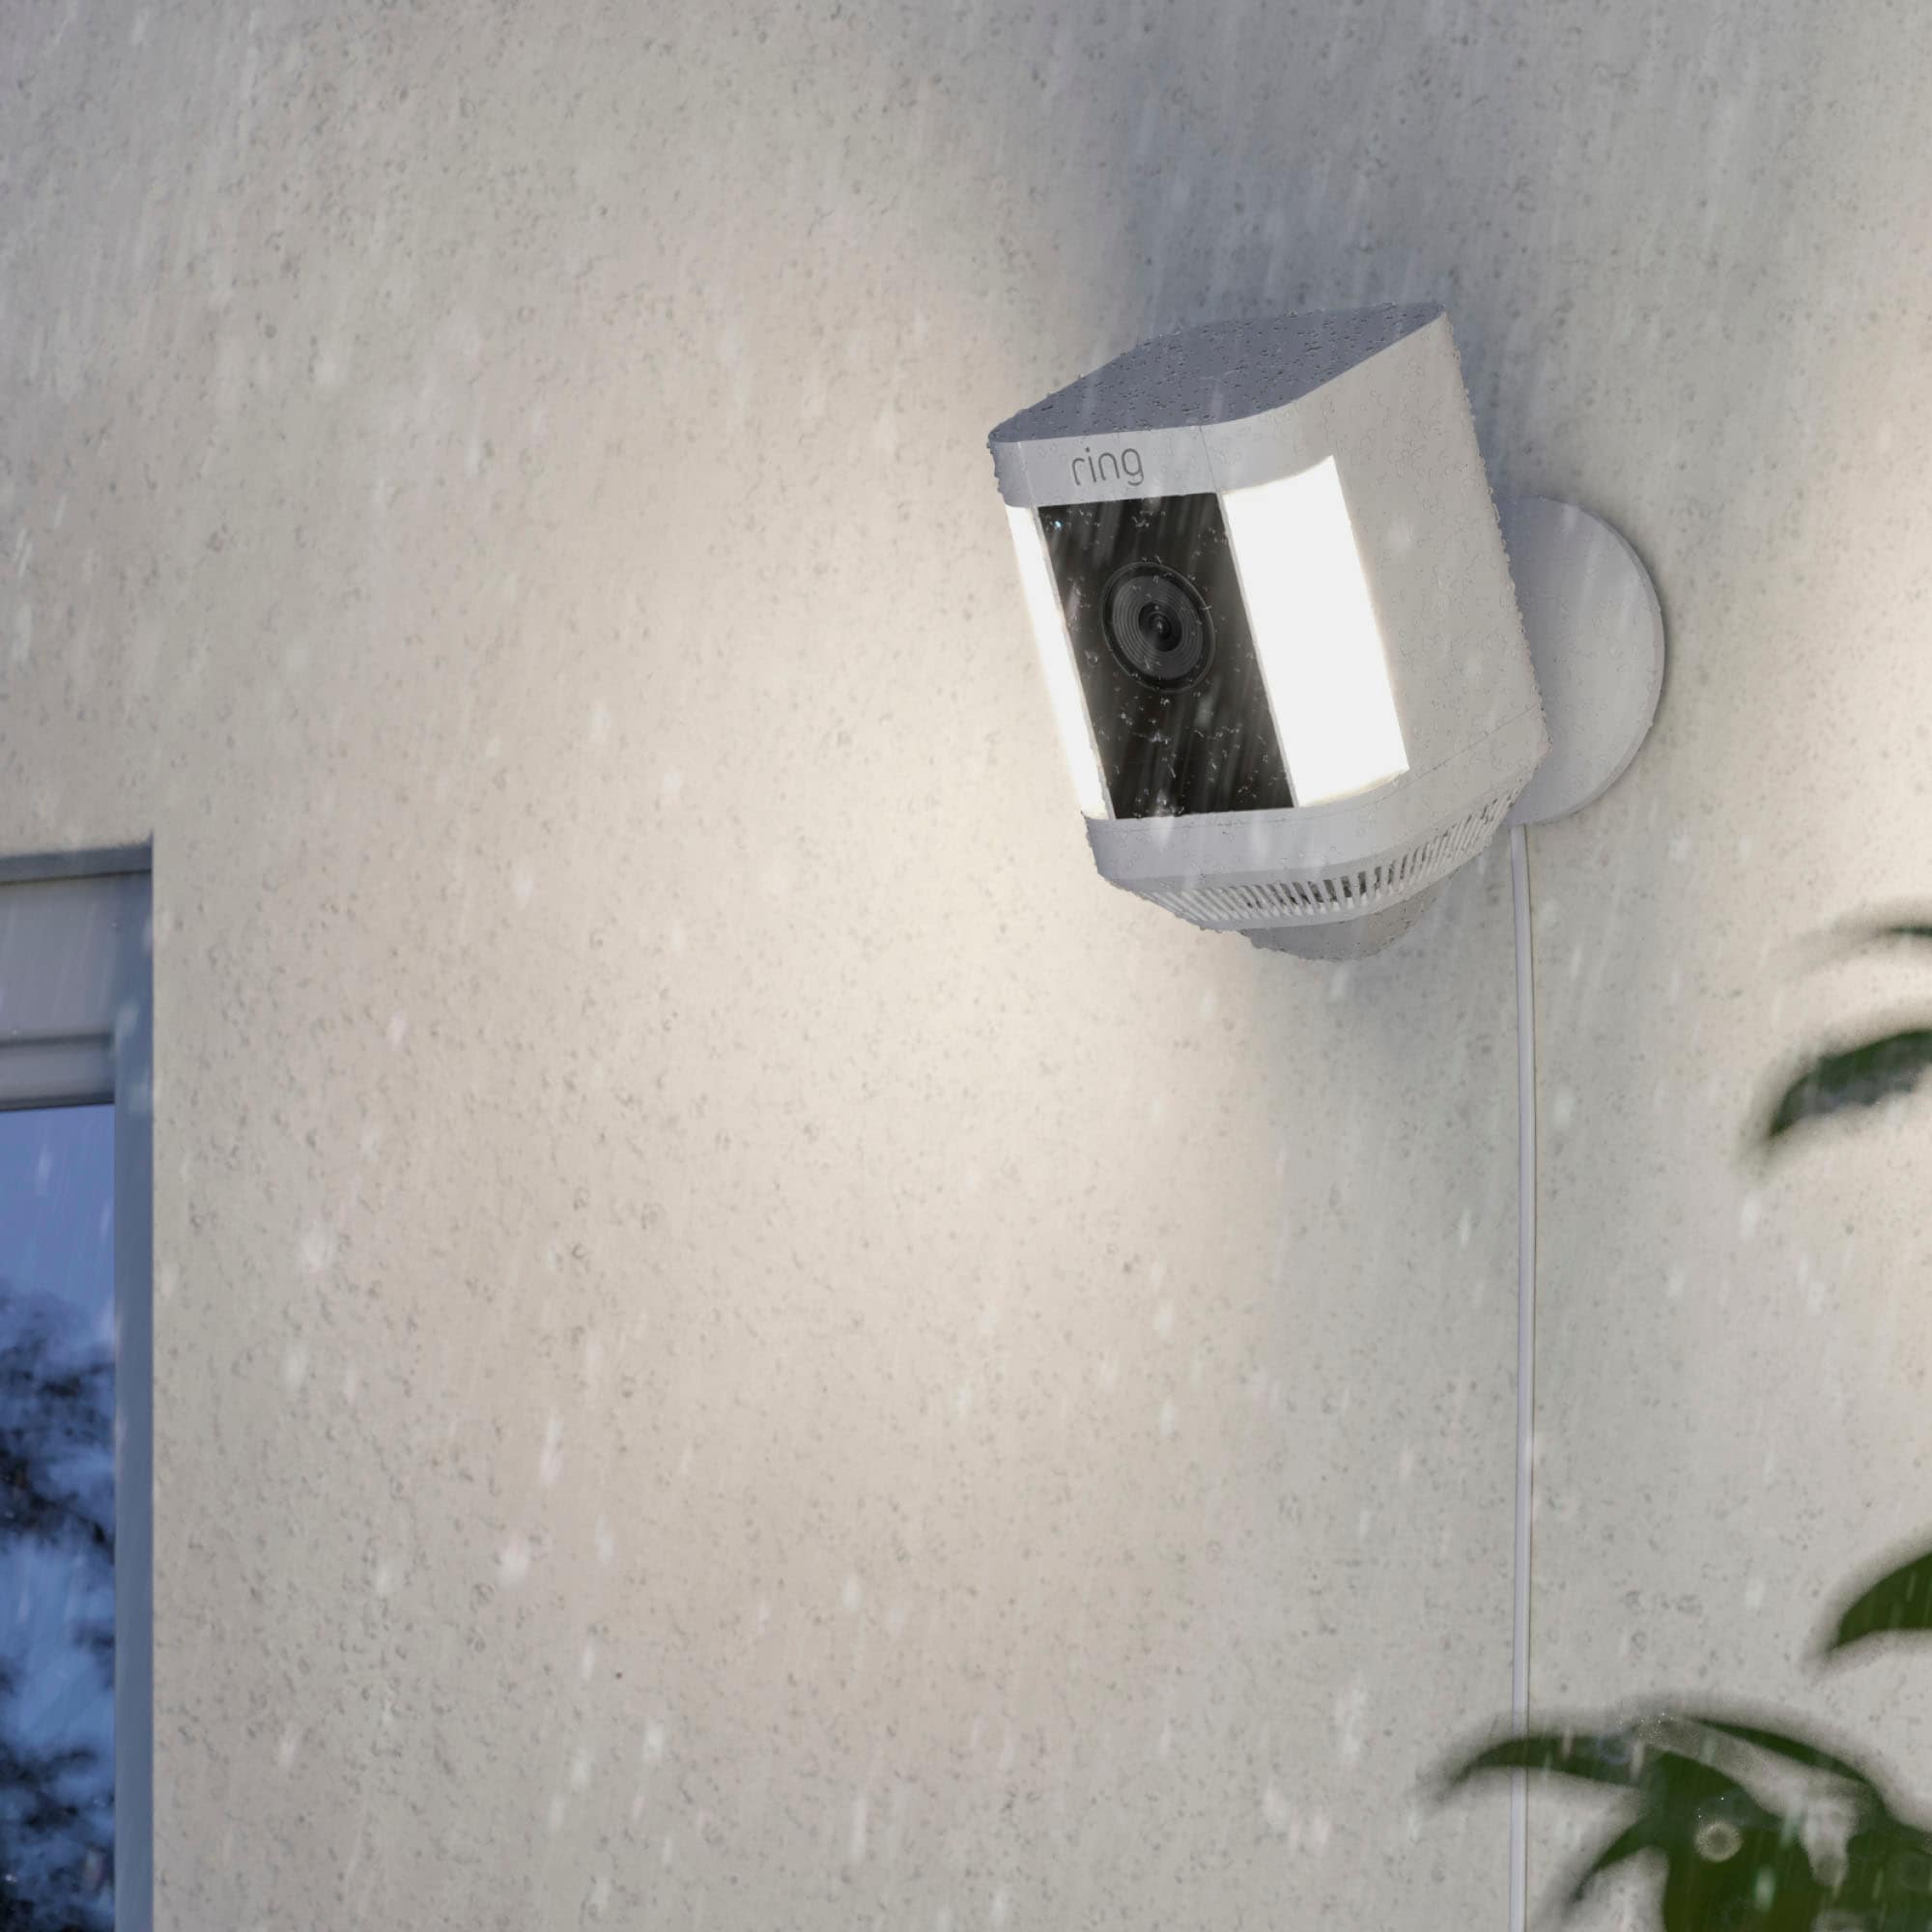 Ring Überwachungskamera »Spotlight Cam Plus, Plug-in - White - EU«, Aussenbereich